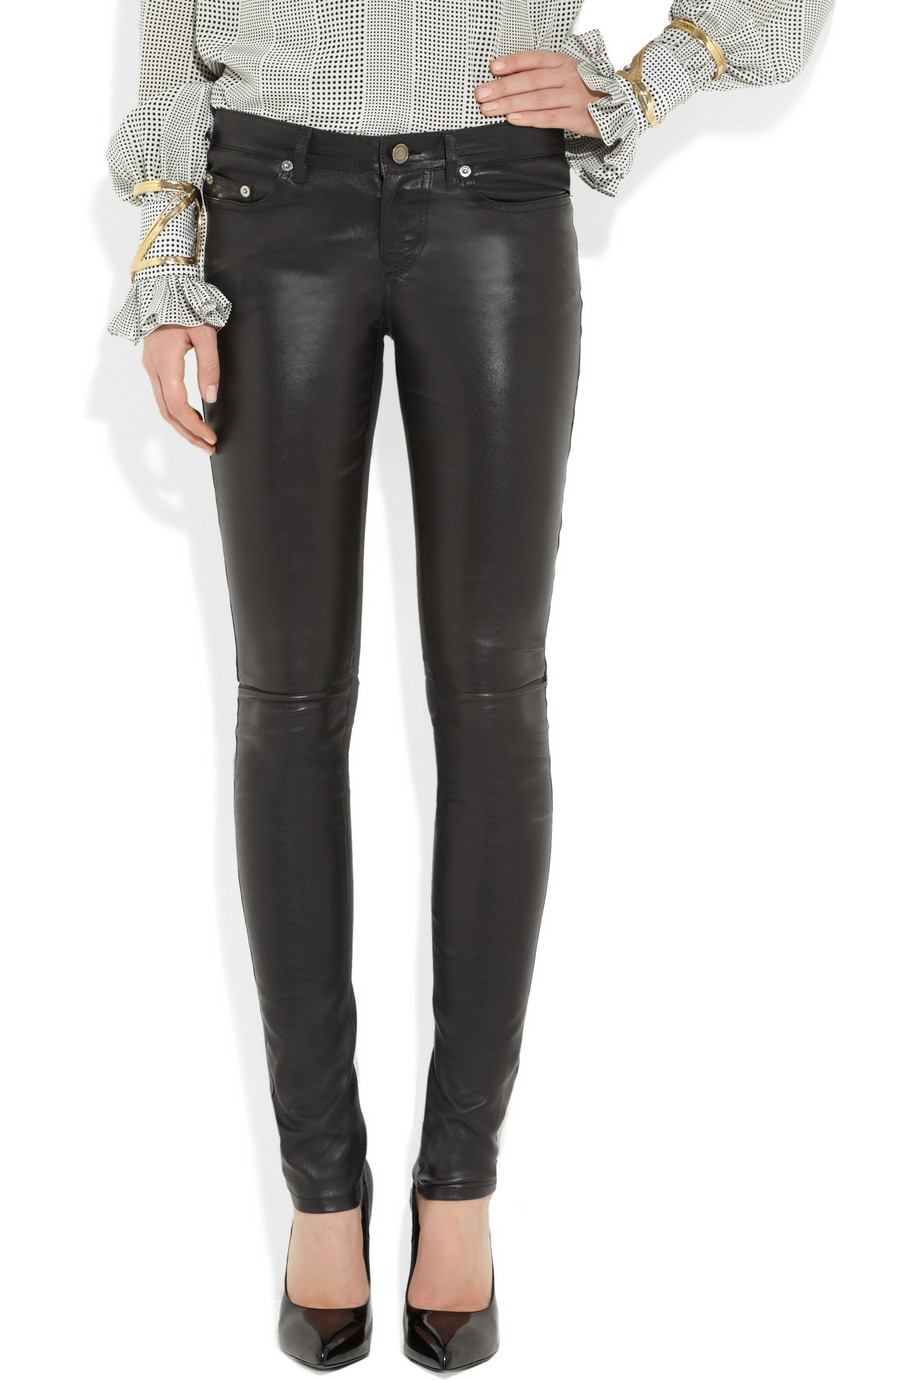 Saint Laurent Low Rise Faux Patent Leather Pants in Black